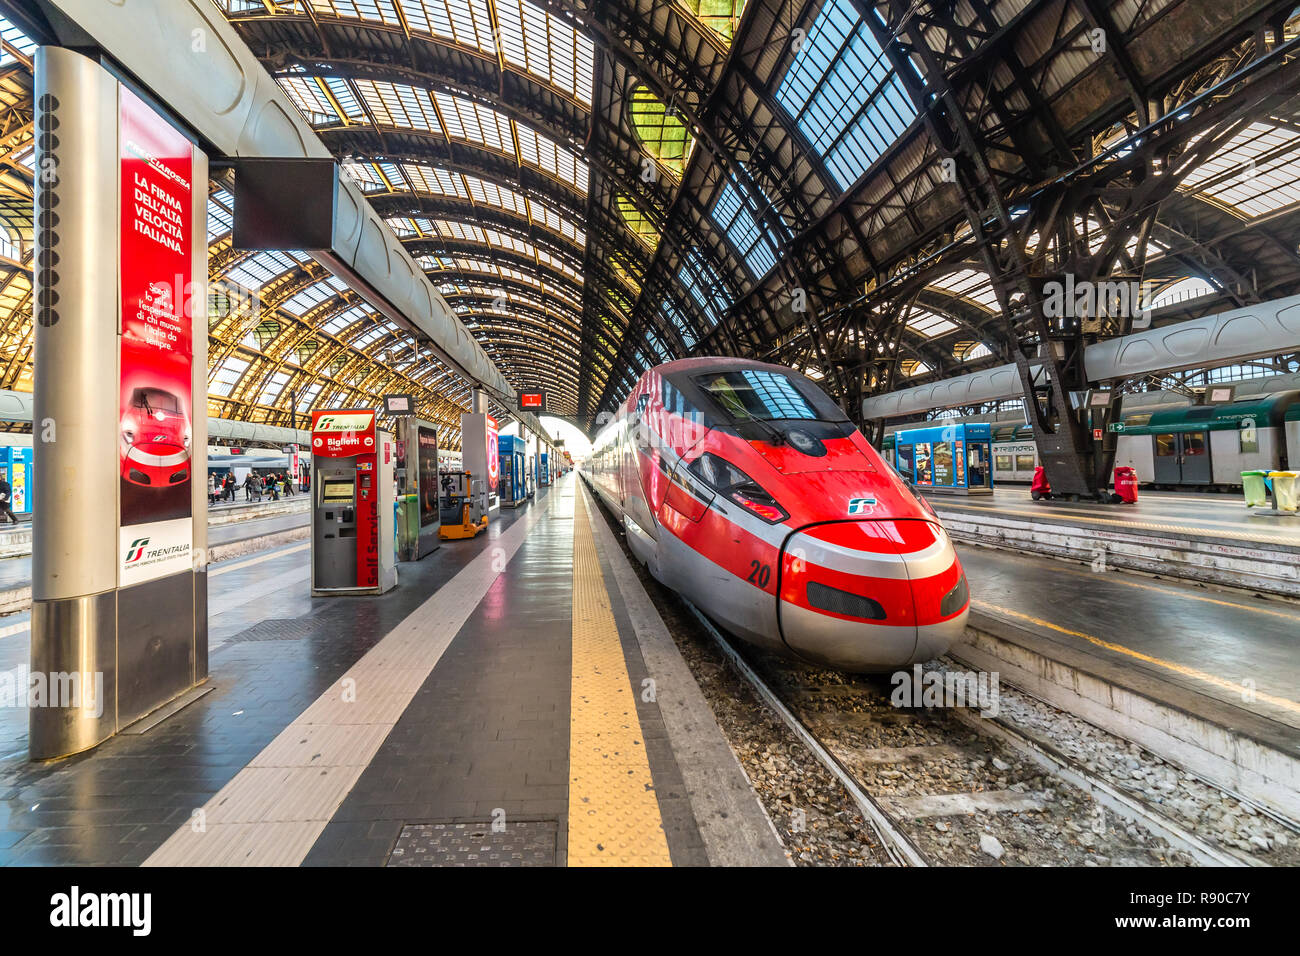 MILANO, ITALY - DECEMBER 12, 2018: TRENITALIA FRECCIAROSSA train waiting at Milano Centrale station Stock Photo